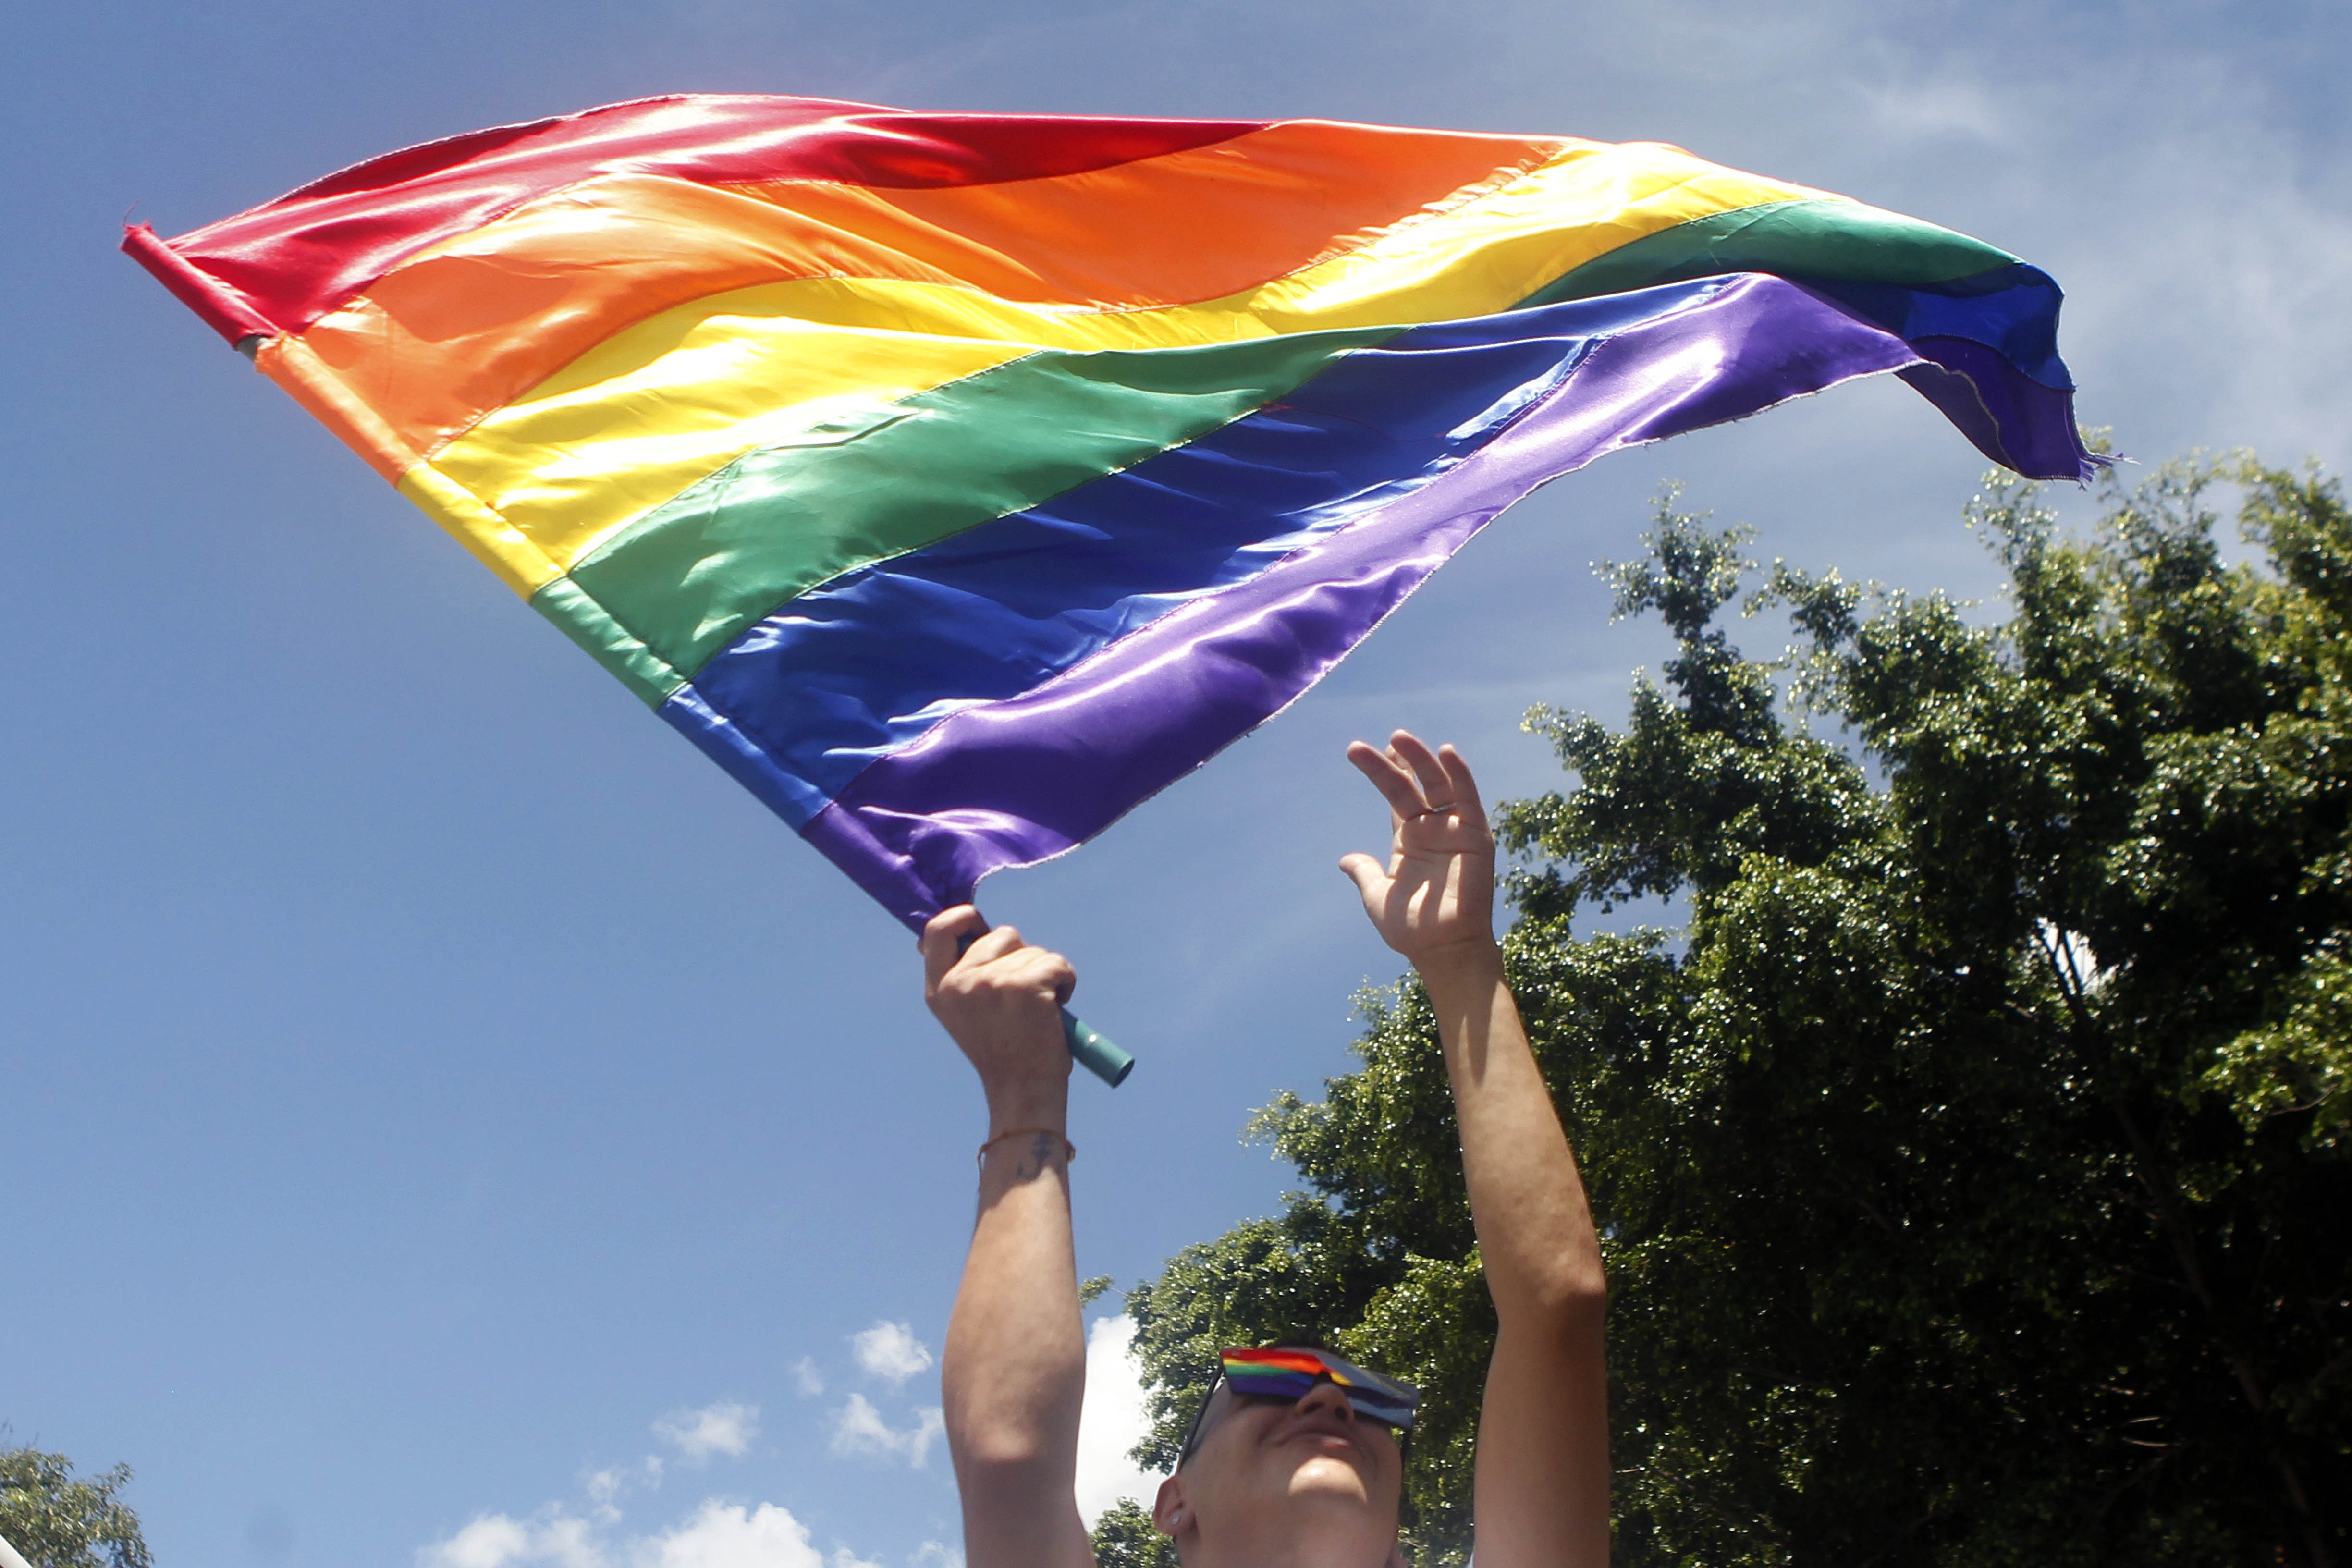 La Corte Suprema de Panamá rechazó el matrimonio igualitario: “No es un derecho y no pasa de ser una aspiración” (EFE)